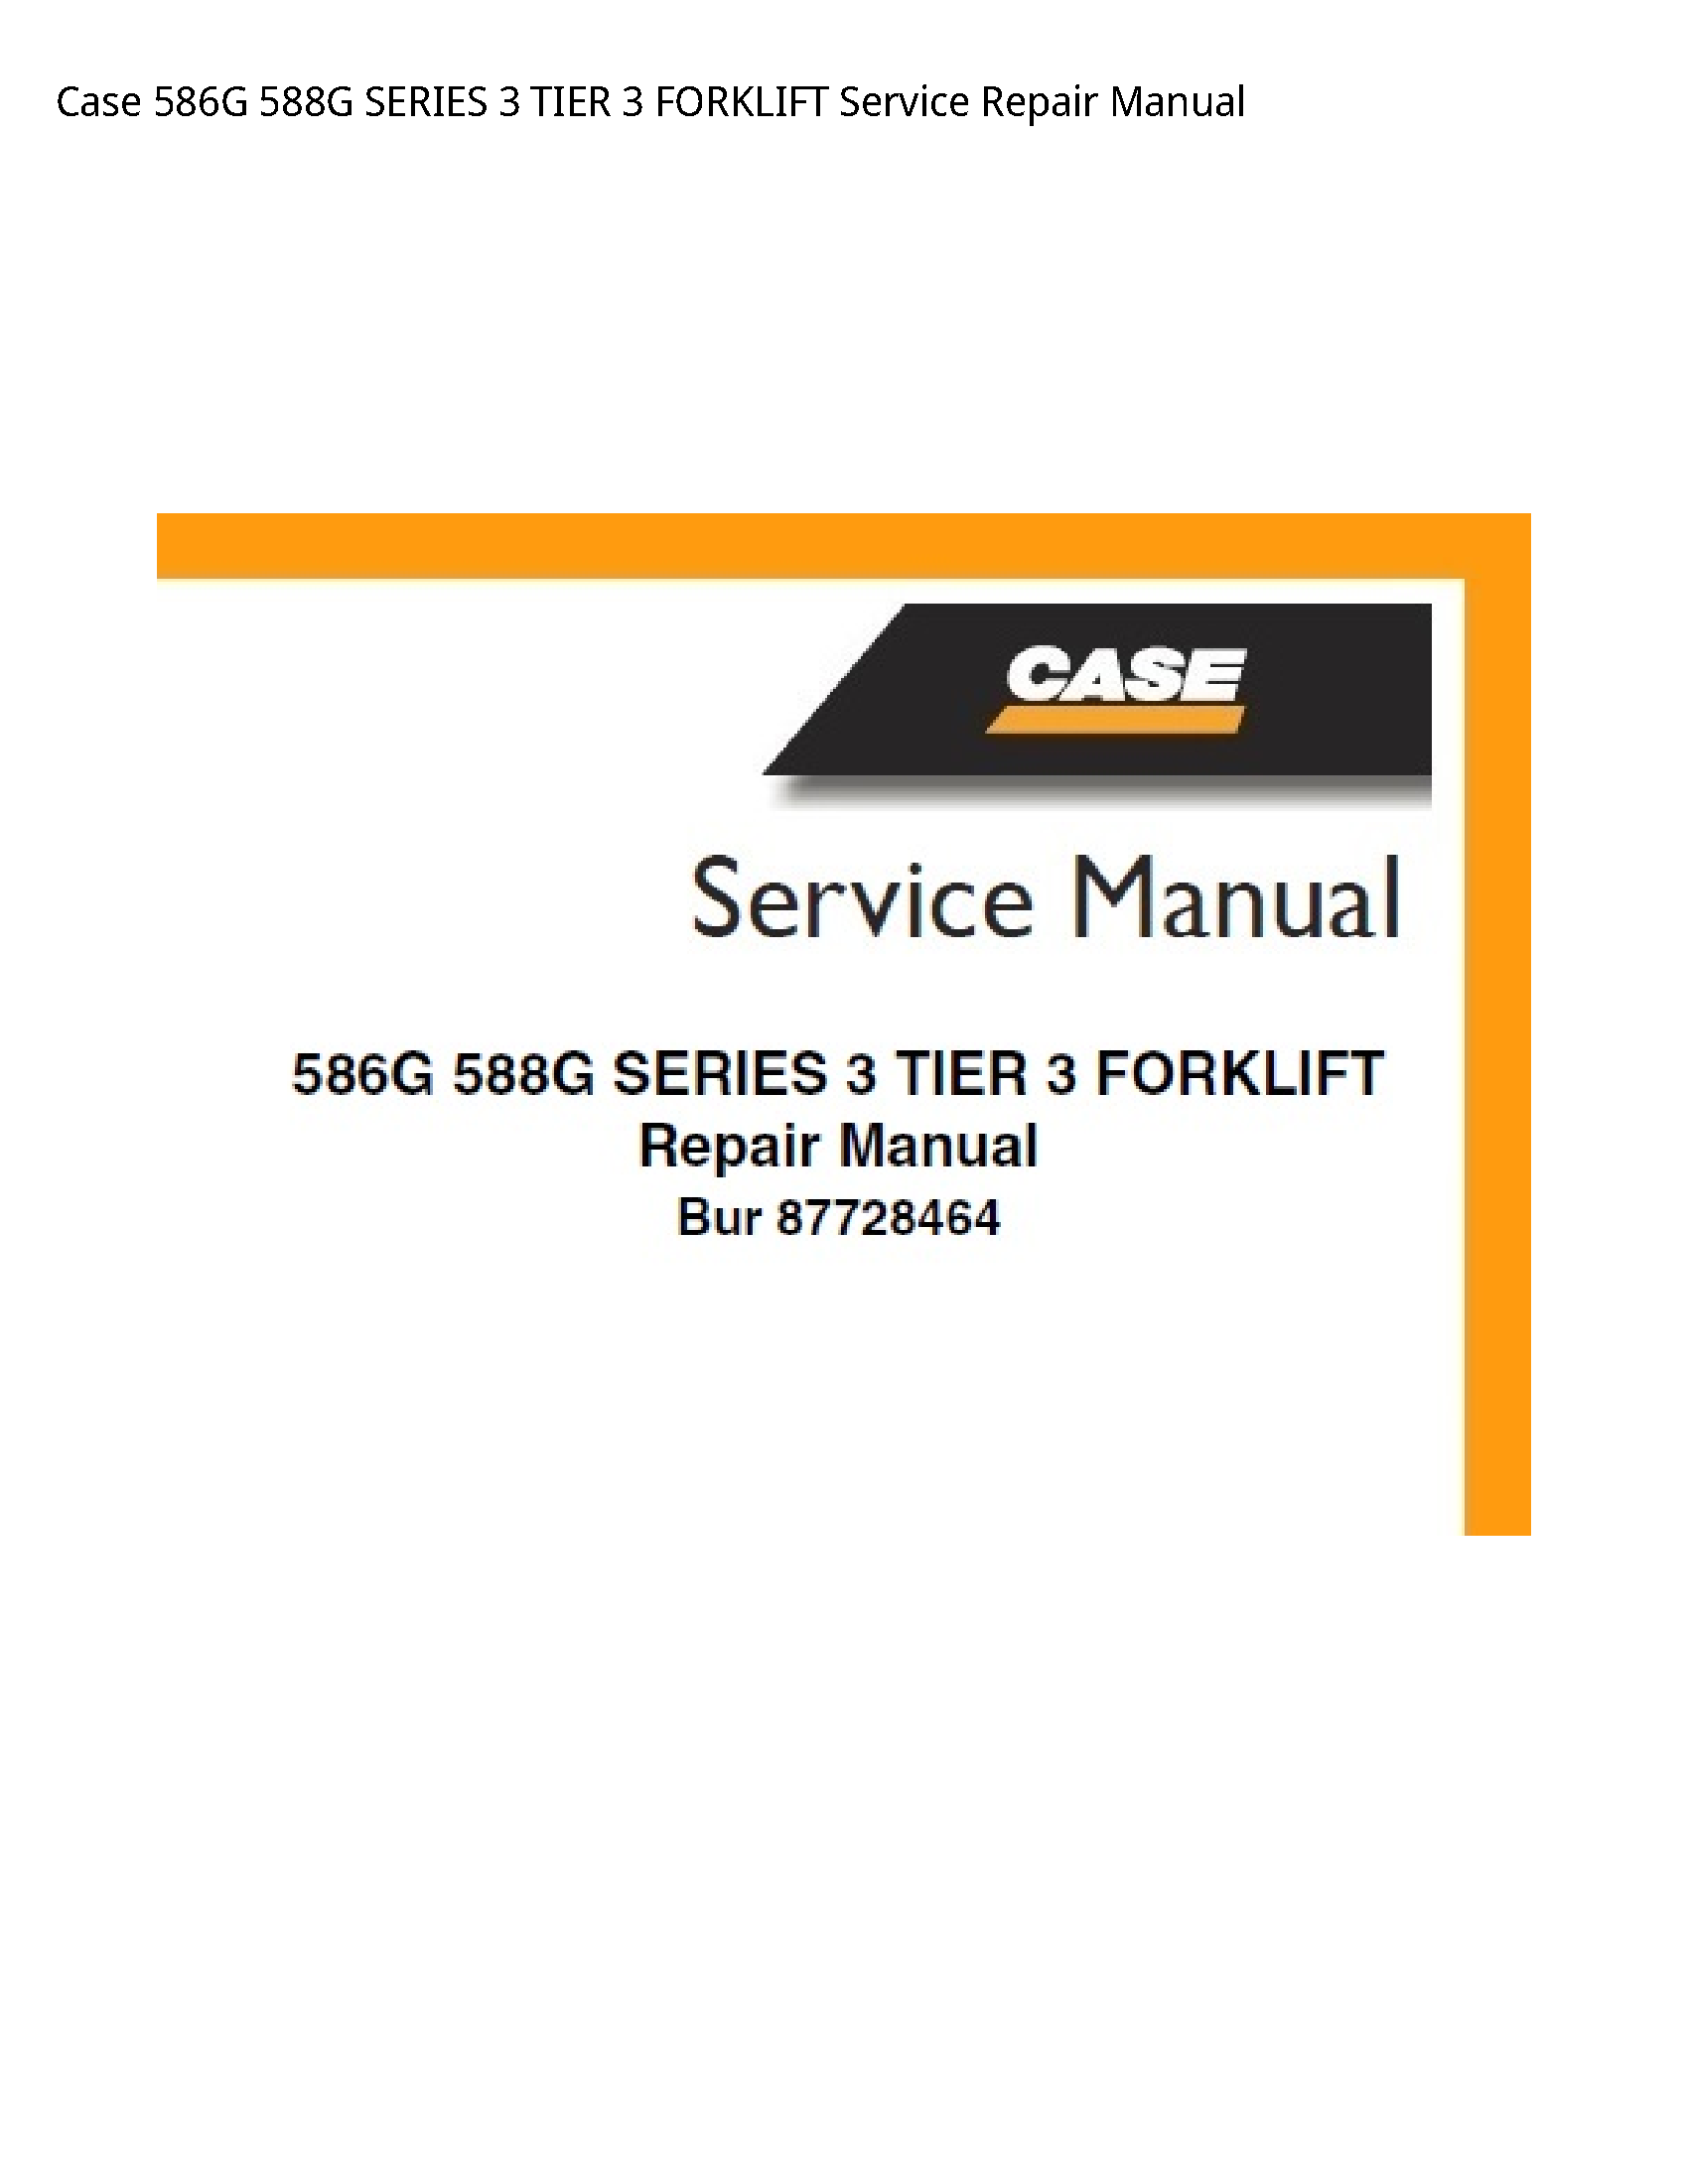 Case/Case IH 586G SERIES TIER FORKLIFT manual